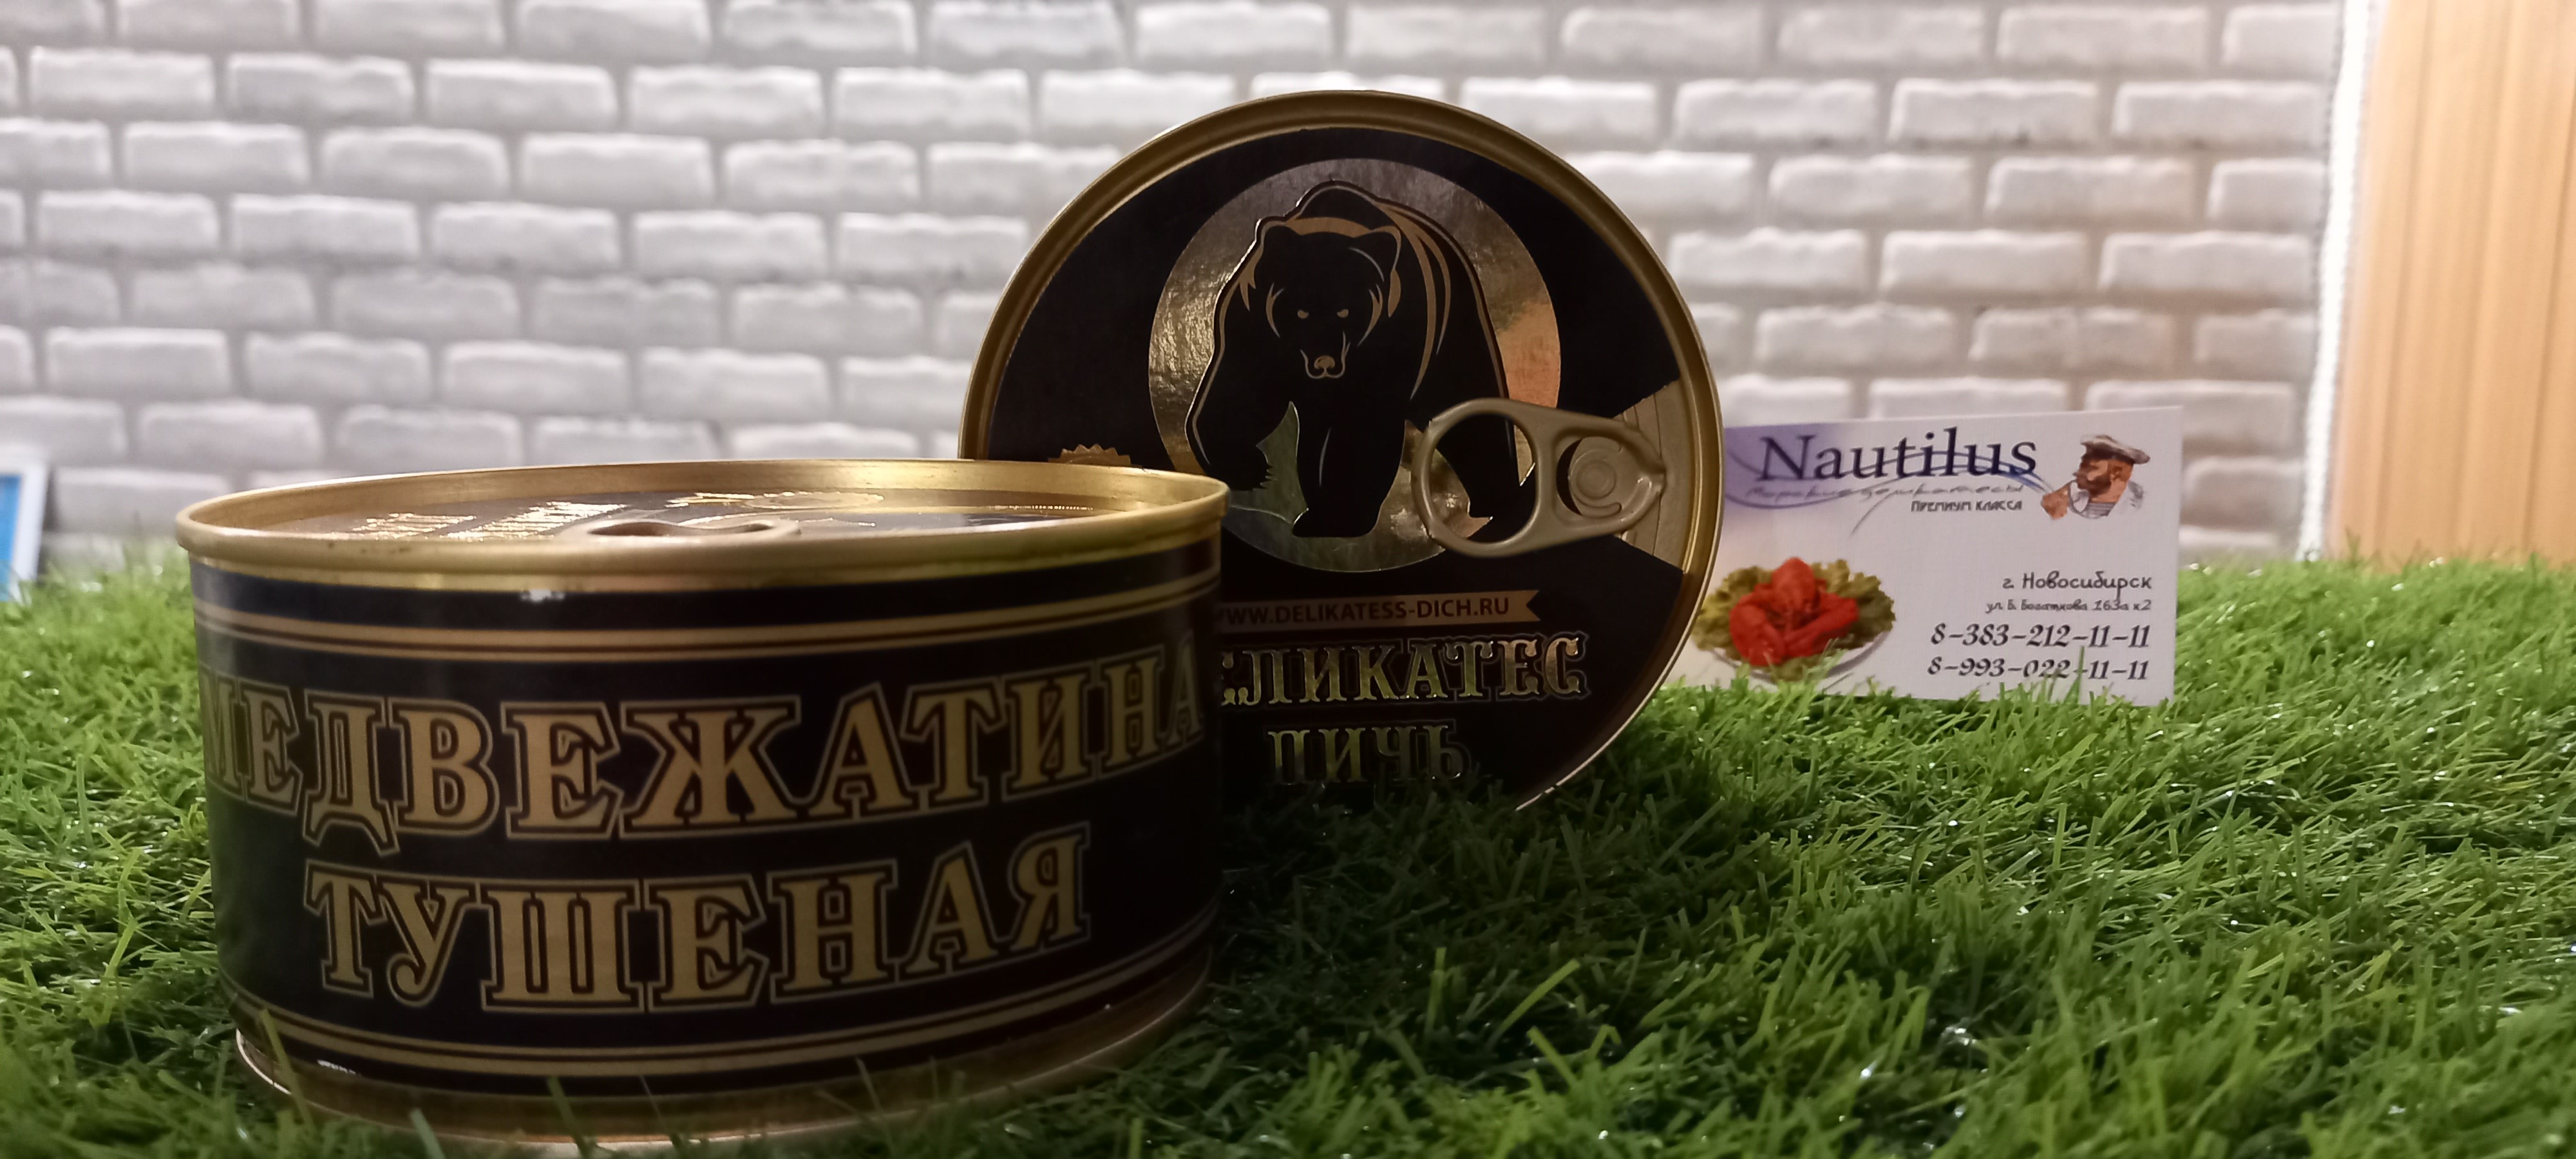 Купить консервированную дичь Медвежатину в Новосибирске оптом и в розницу